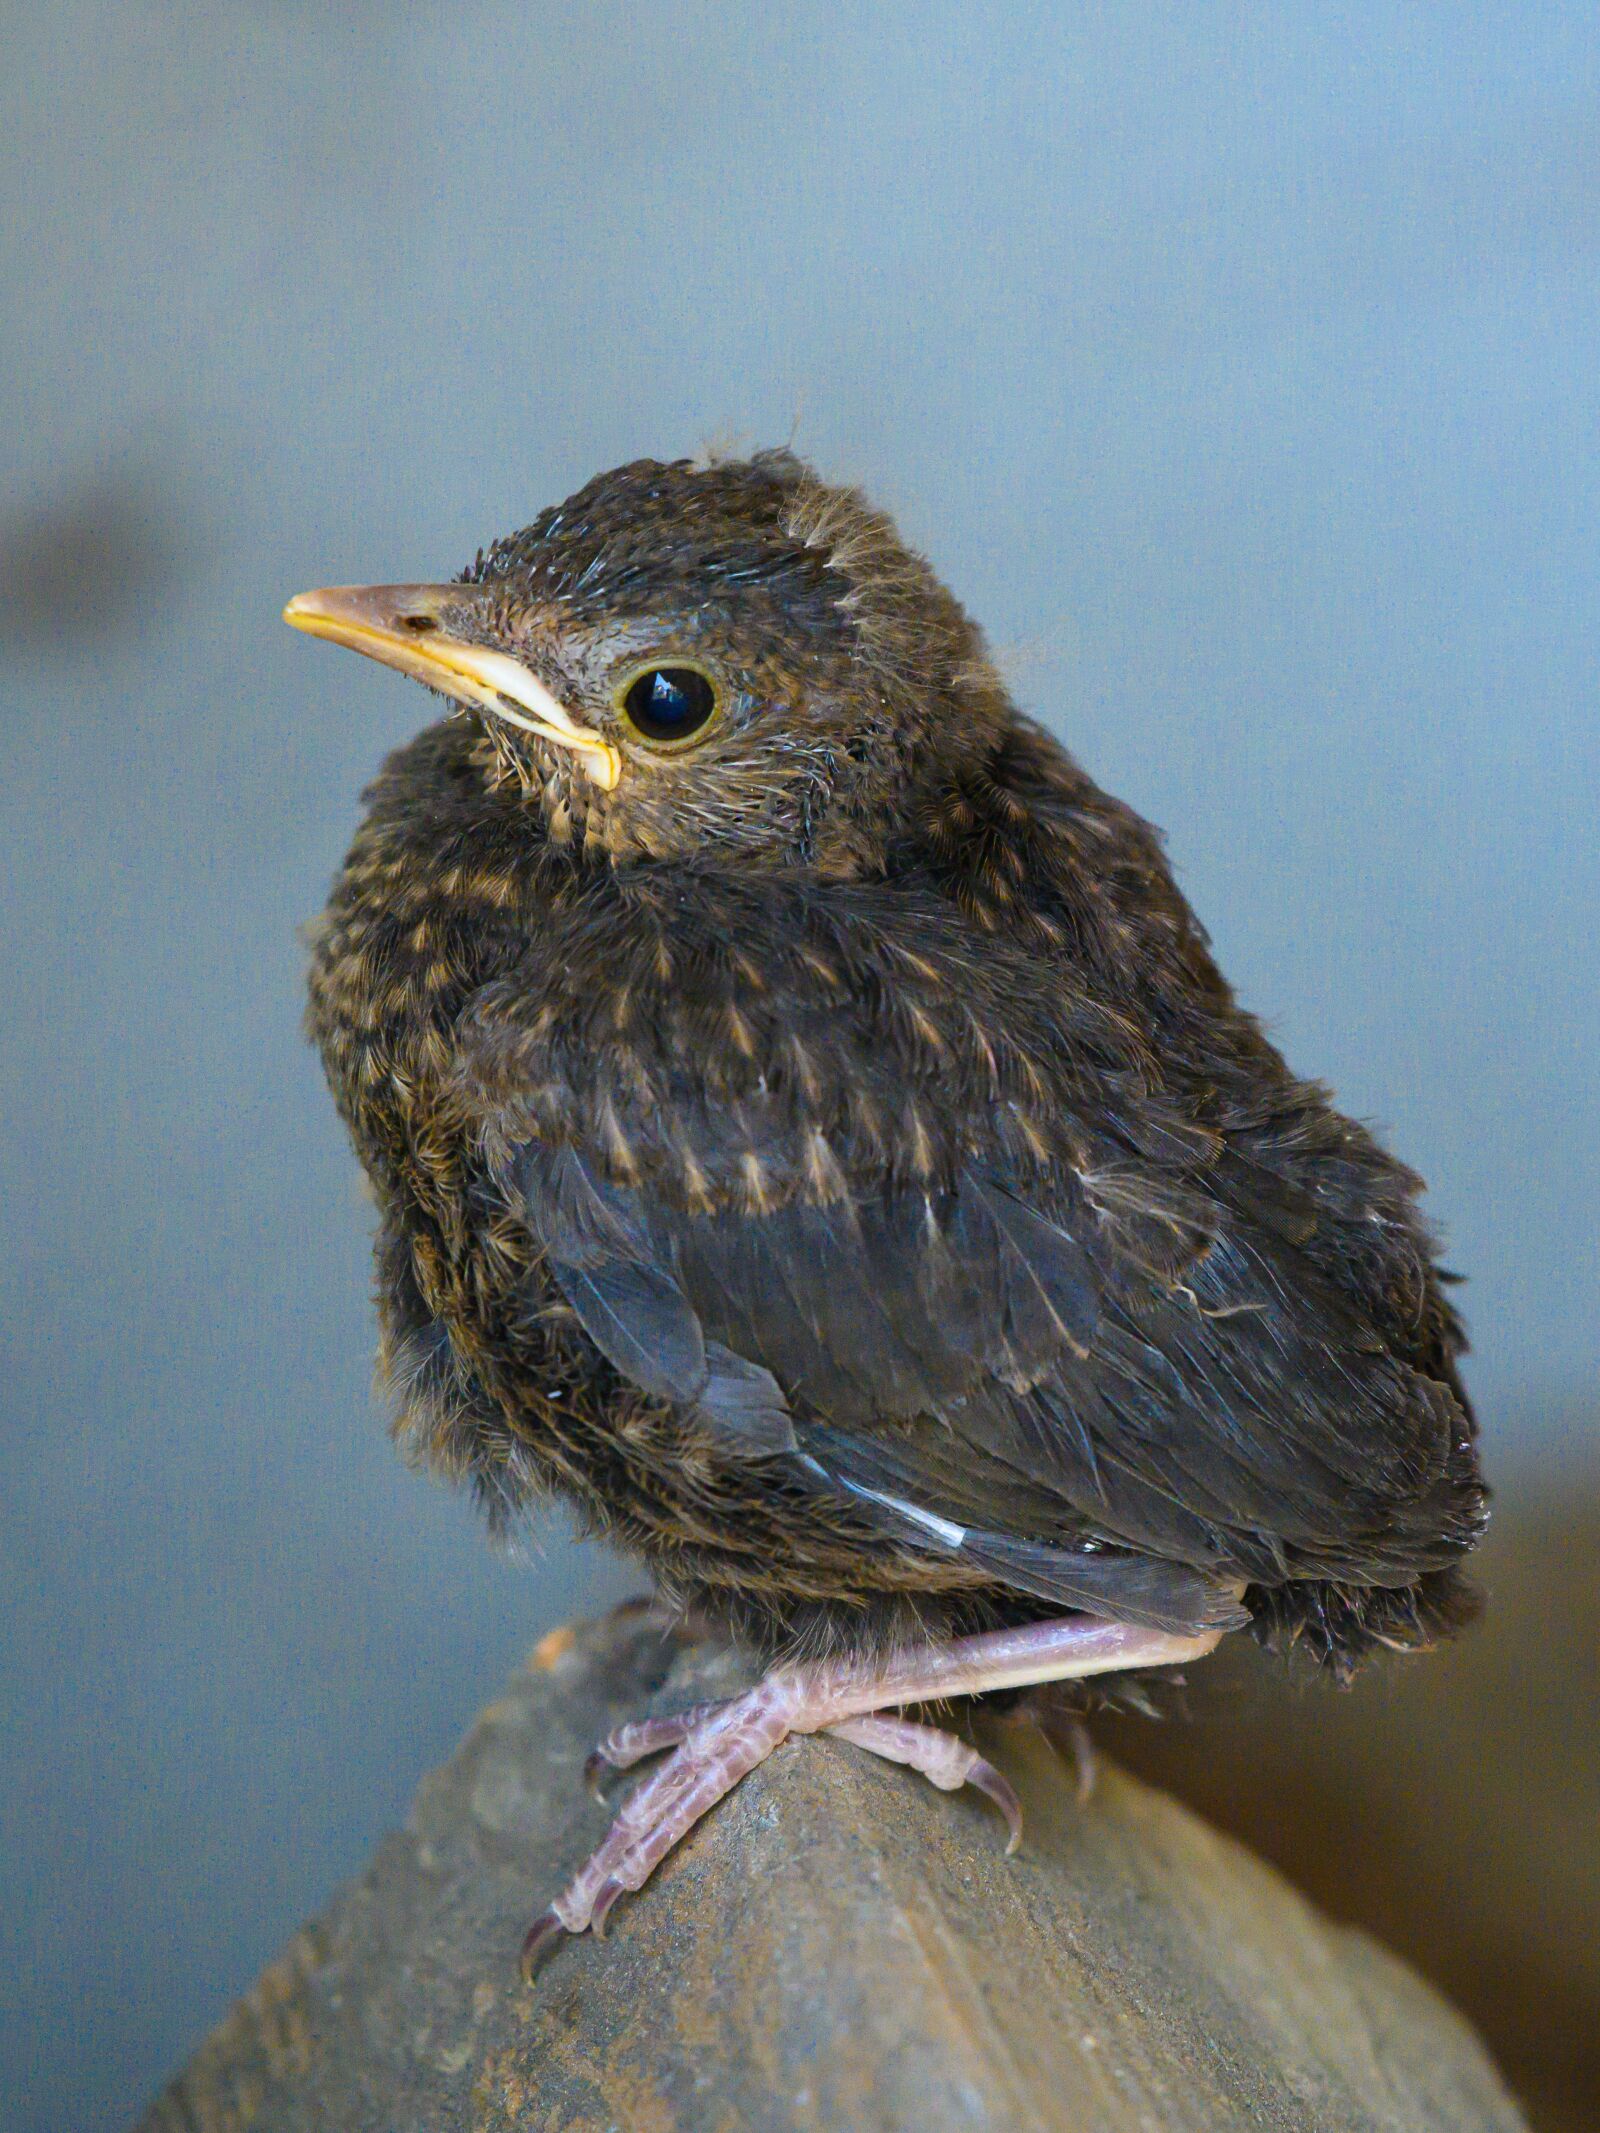 Nikon Z7 sample photo. Blackbird, young bird, bird photography